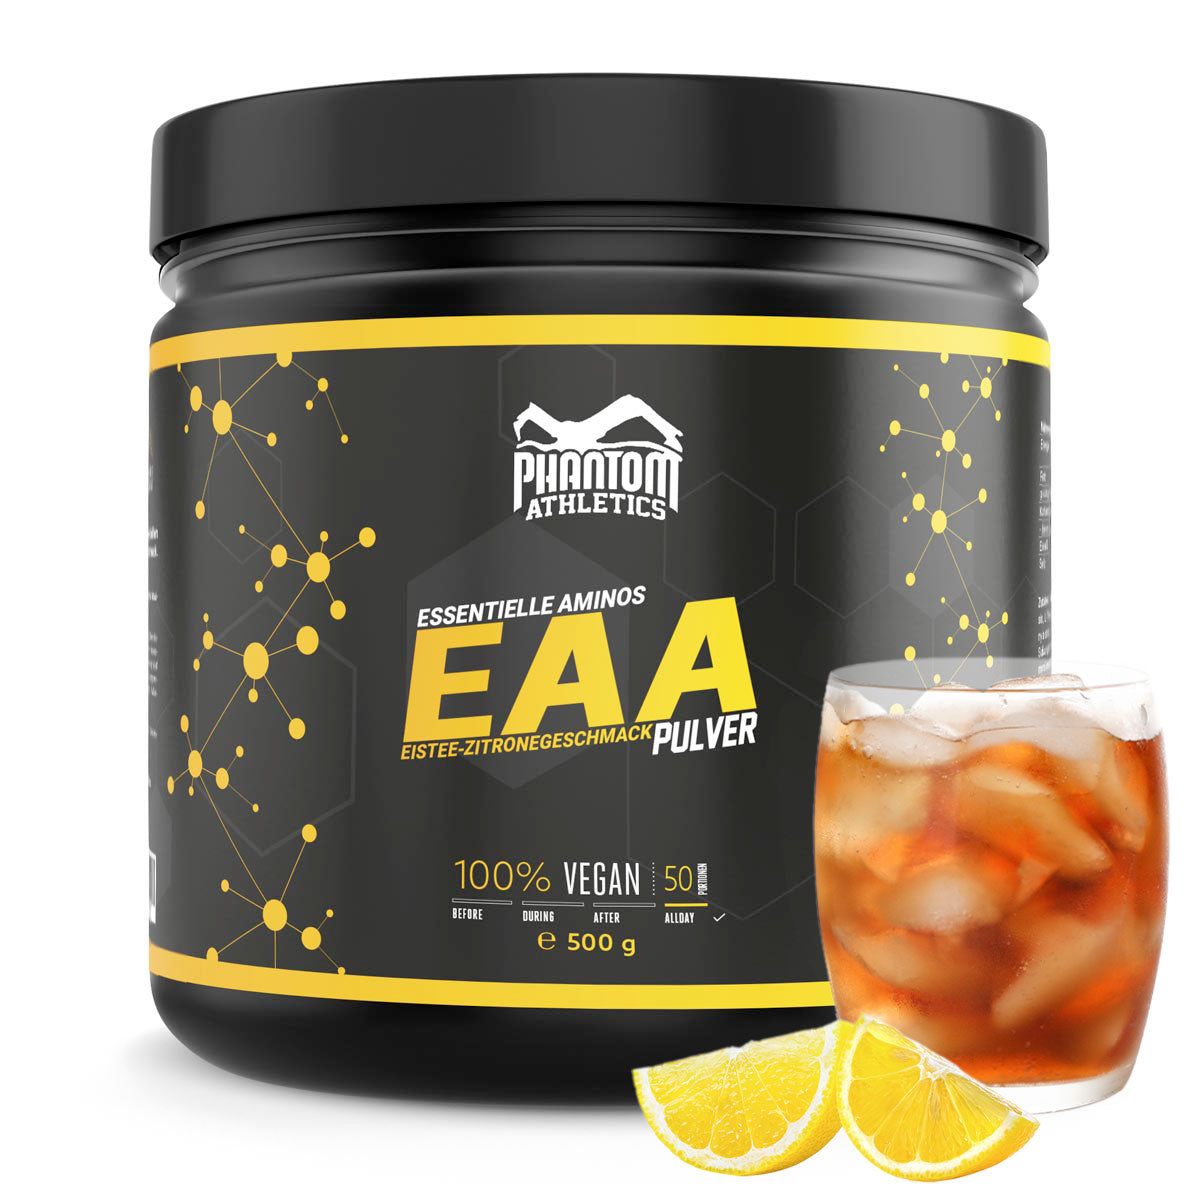 Phantom EAA – olulised aminohapped jäätee sidrunimaitsega. Võitluskunstide optimaalseks hoolduseks.